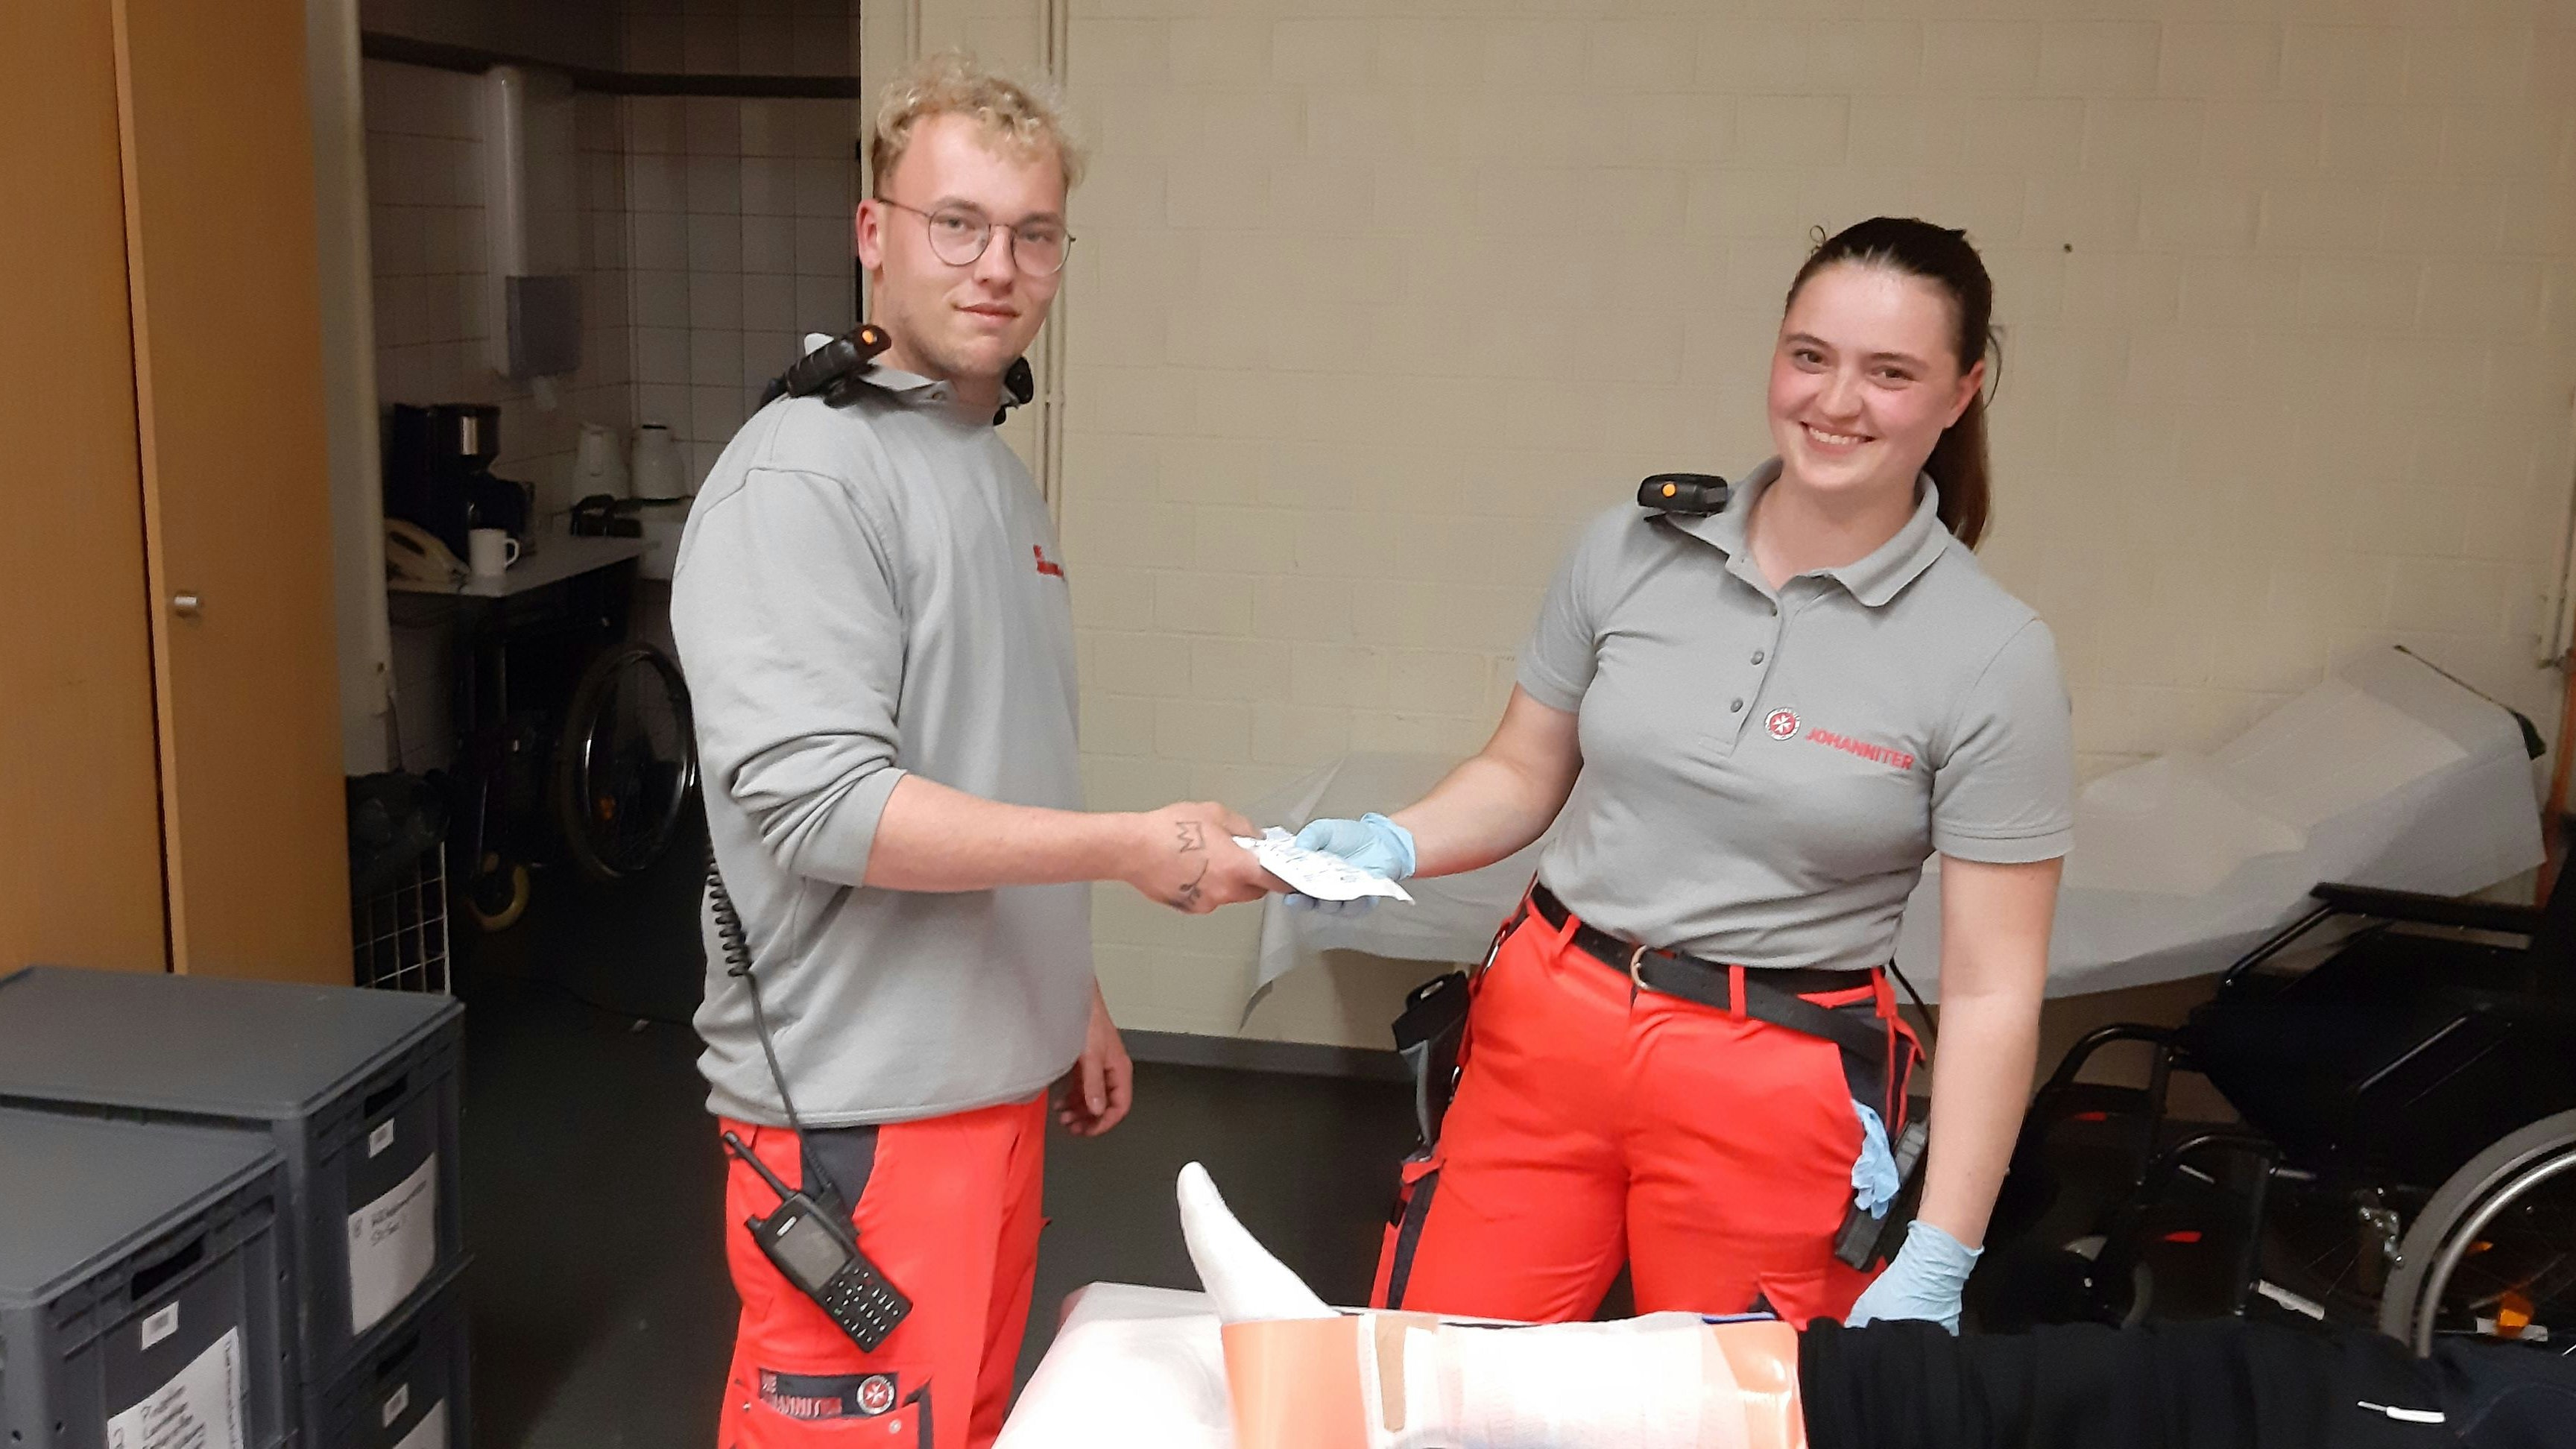 Gut beschäftigt: Abschnittsleiter Jonas Niemann und Kollegin Erika hatten in den Weser-Ems-Hallen viel zu tun. Foto: Stapf/Johanniter